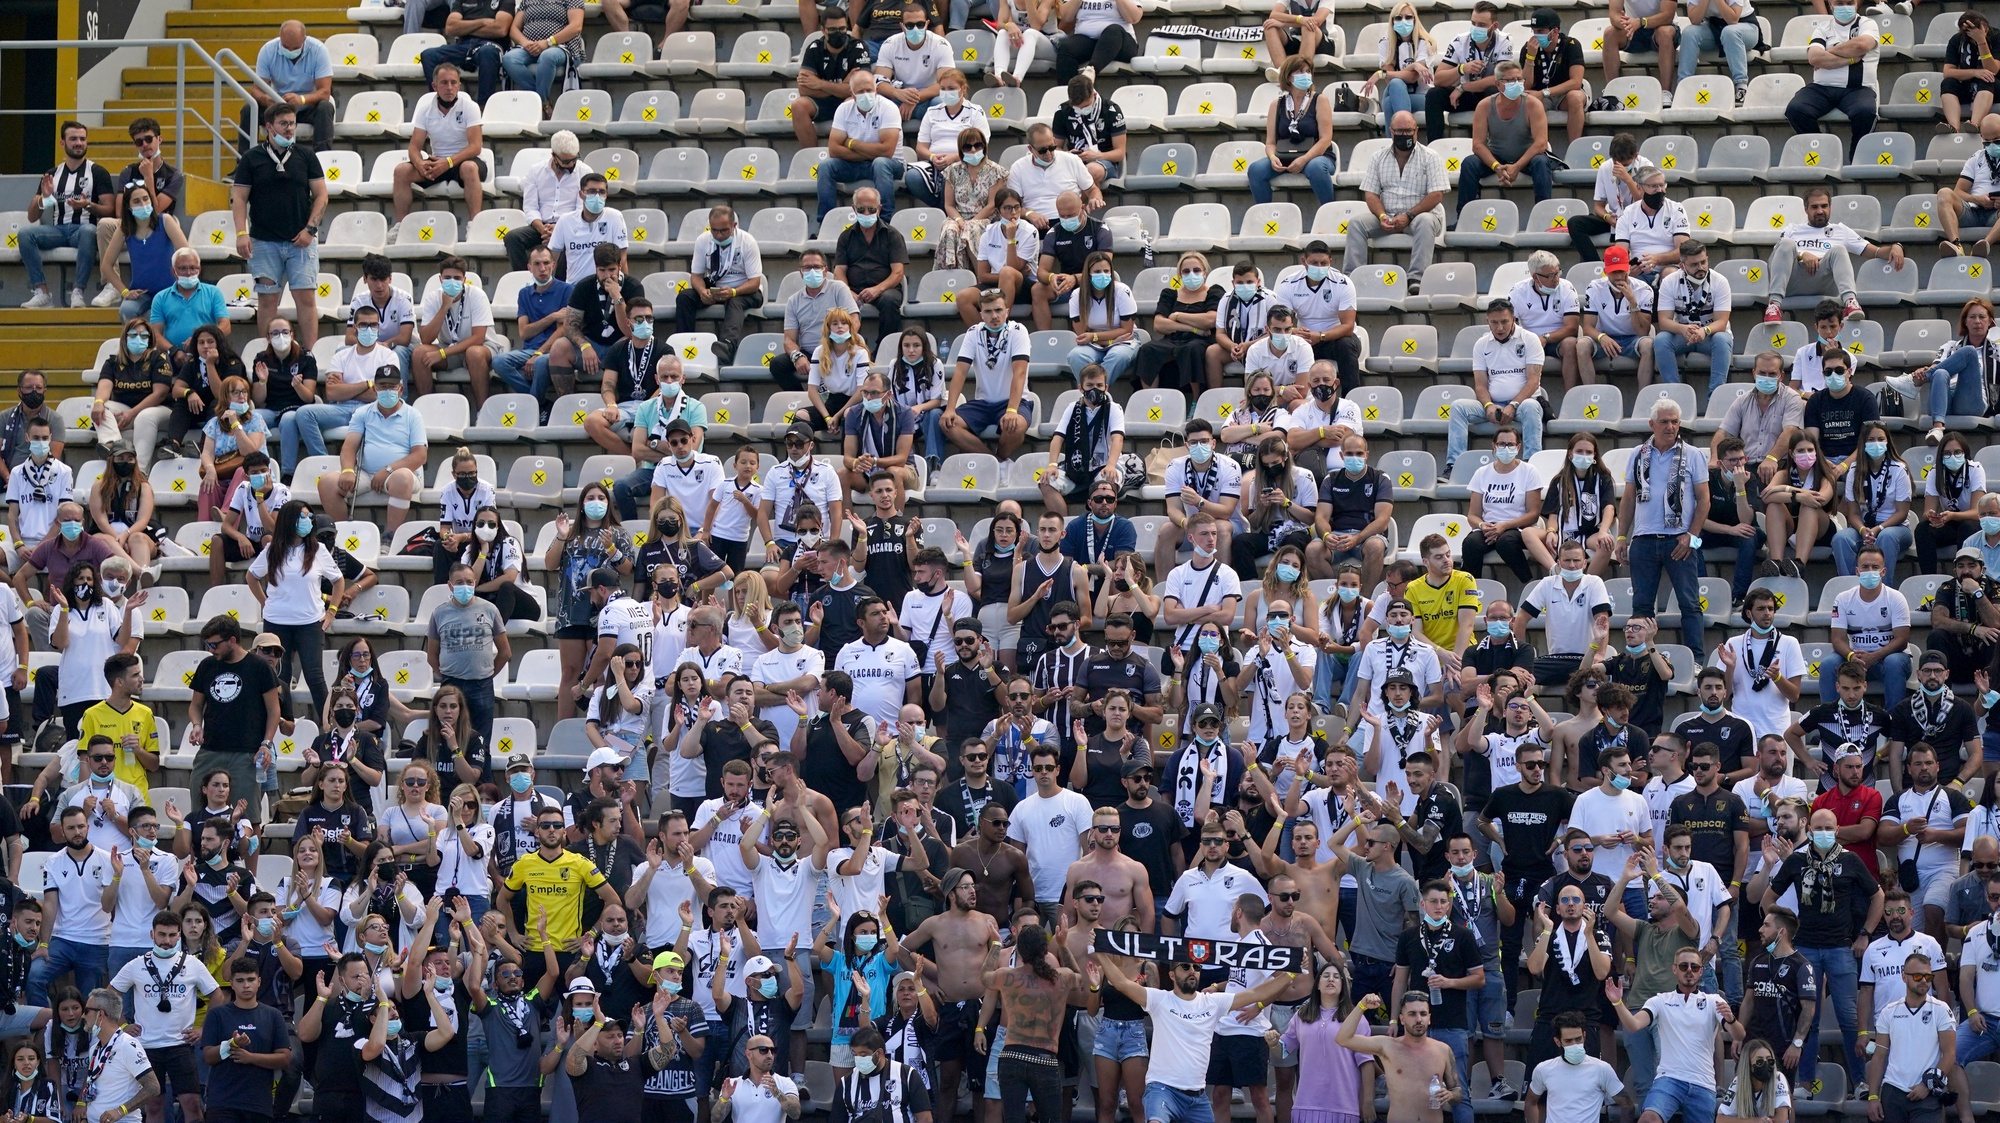 Adeptos do Vitória de Guimarães durante o jogo com o Portimonense a contar para a Primeira Liga de Futebol realizado no Estádio D.Afonso Henriques em Guimarães, 8 de agosto 2021. HUGO DELGADO/LUSA